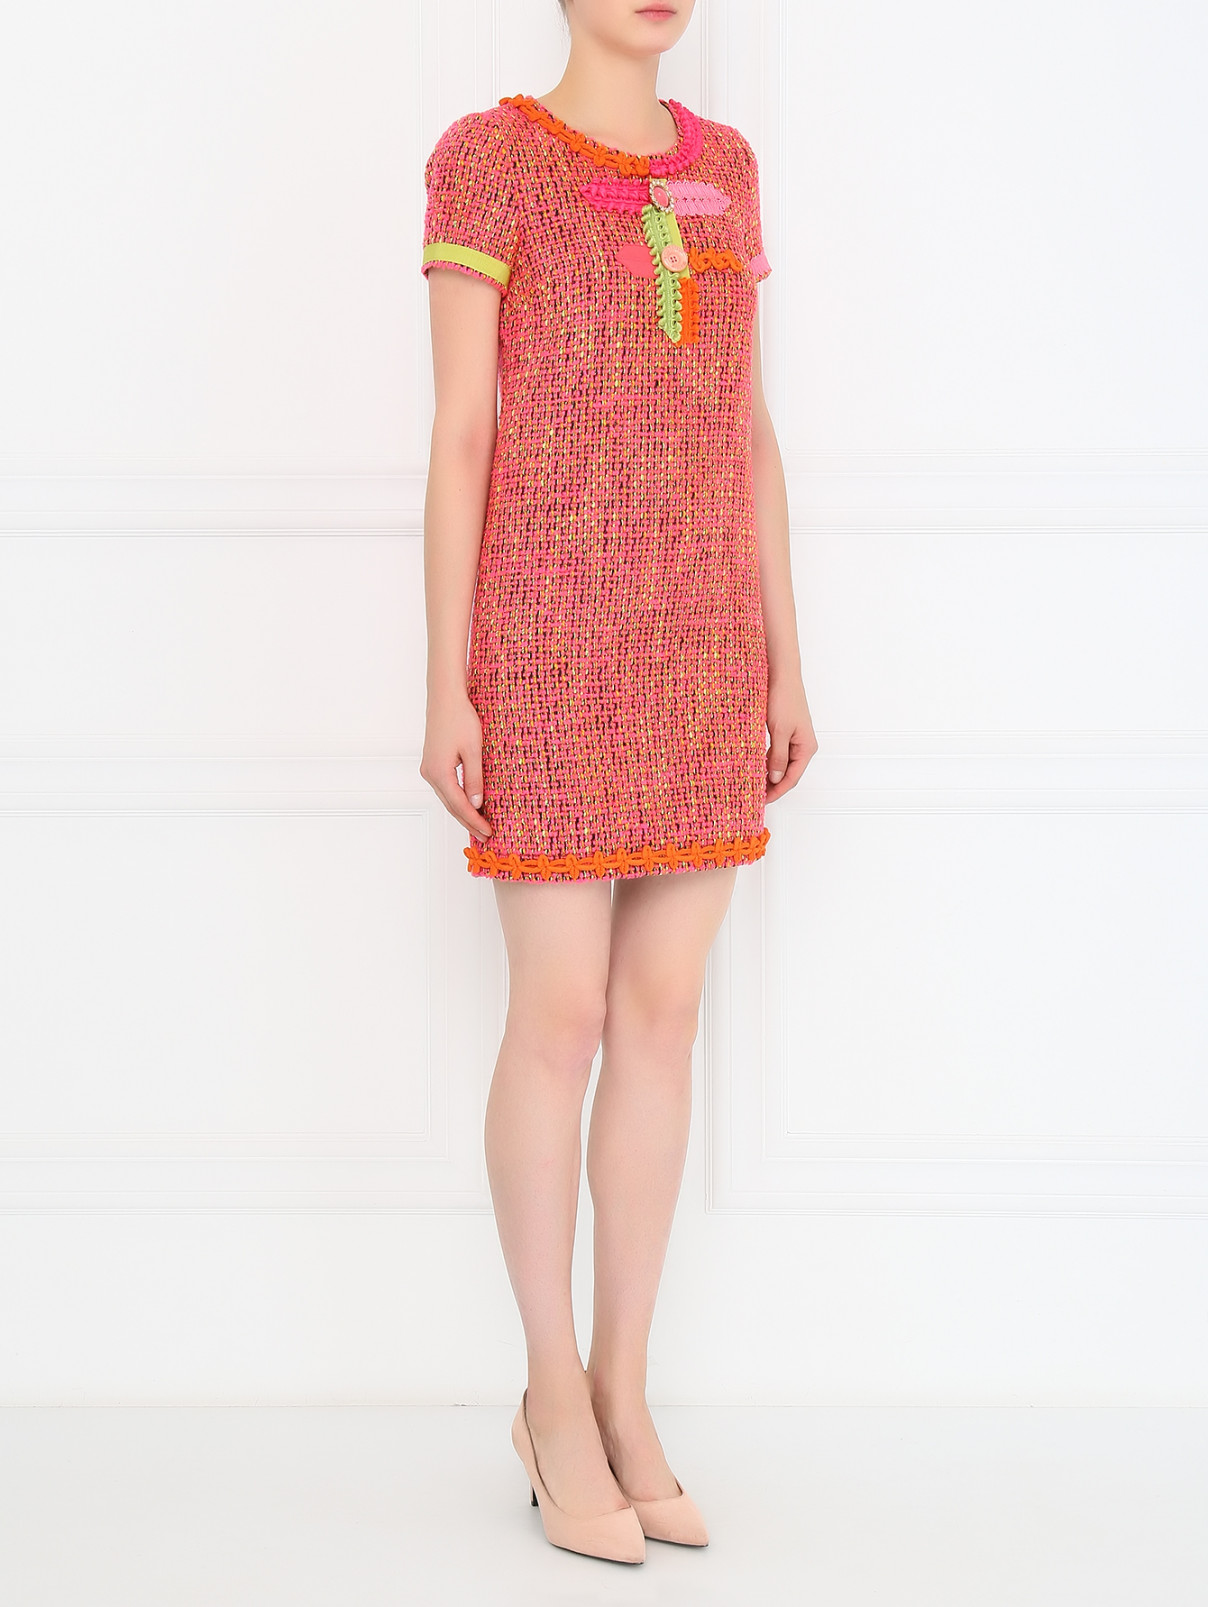 Платье-мини с аппликацией и фурнитурой Moschino Boutique  –  Модель Общий вид  – Цвет:  Розовый